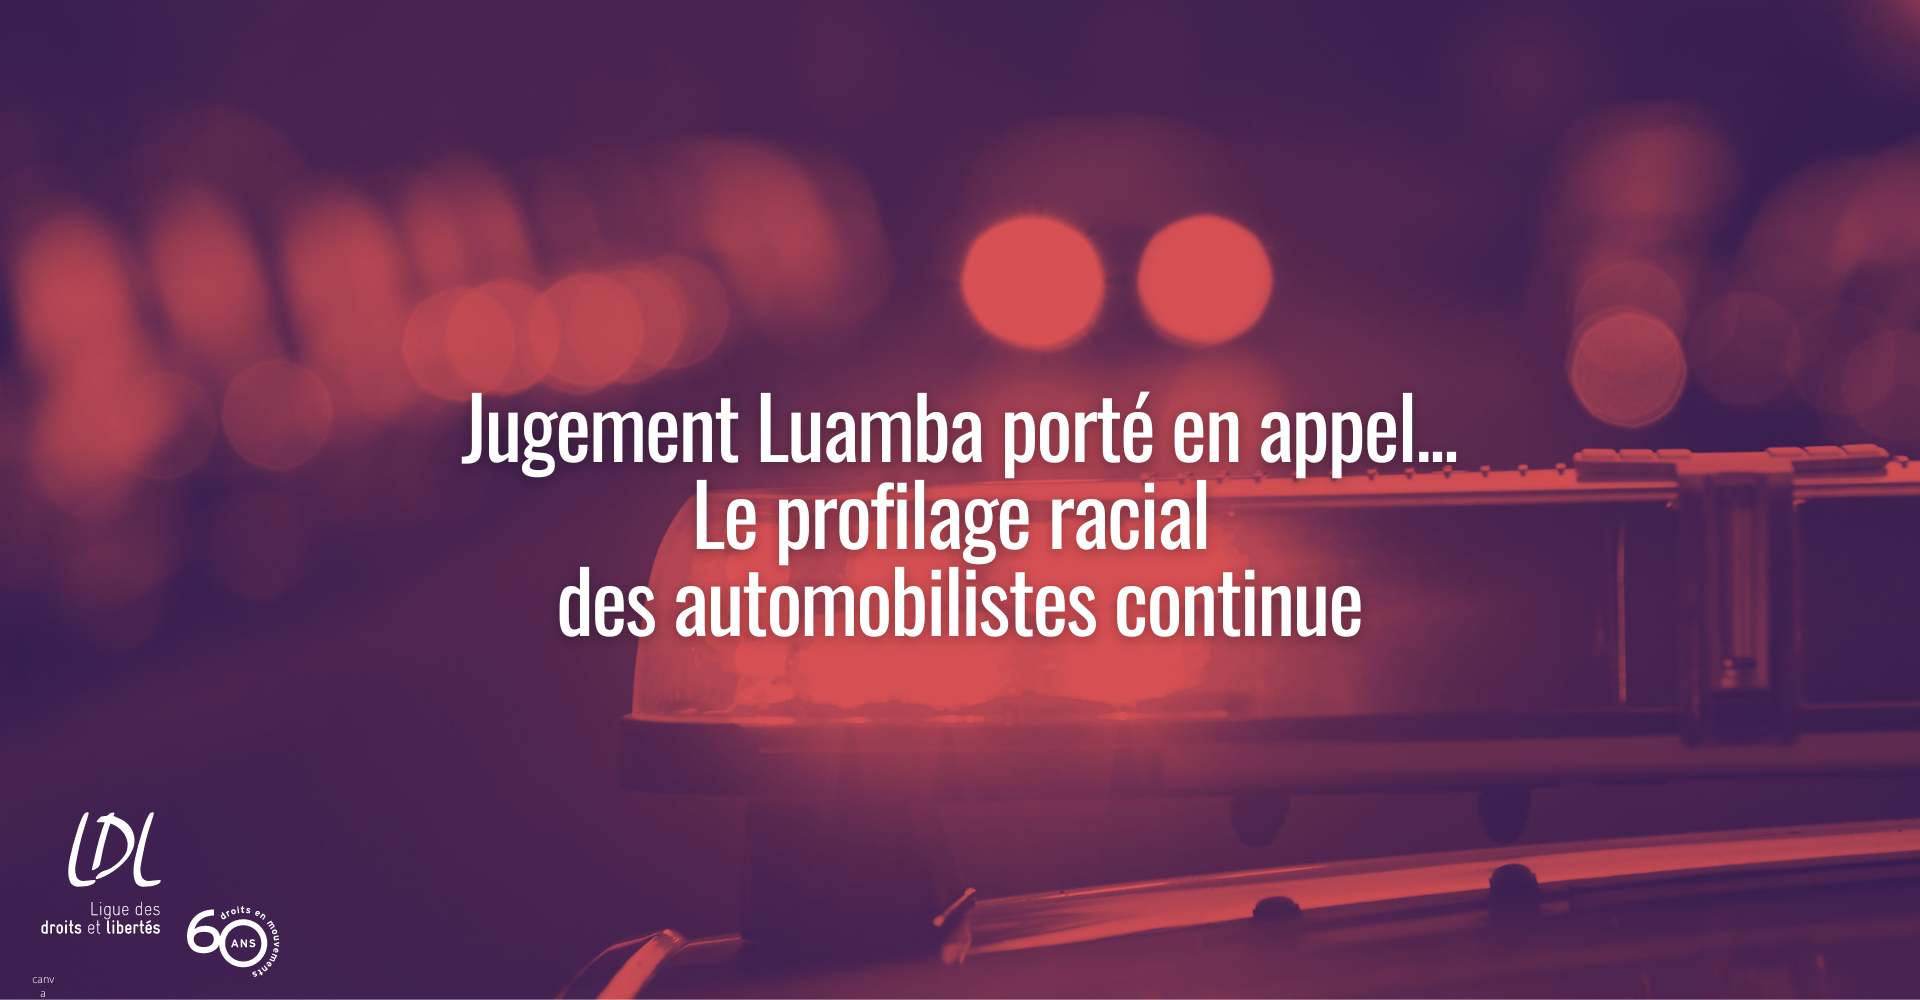 Jugement luamba porté en appel par le gouvernement du Québec fait en sorte que le profilage racial des automobilistes continue